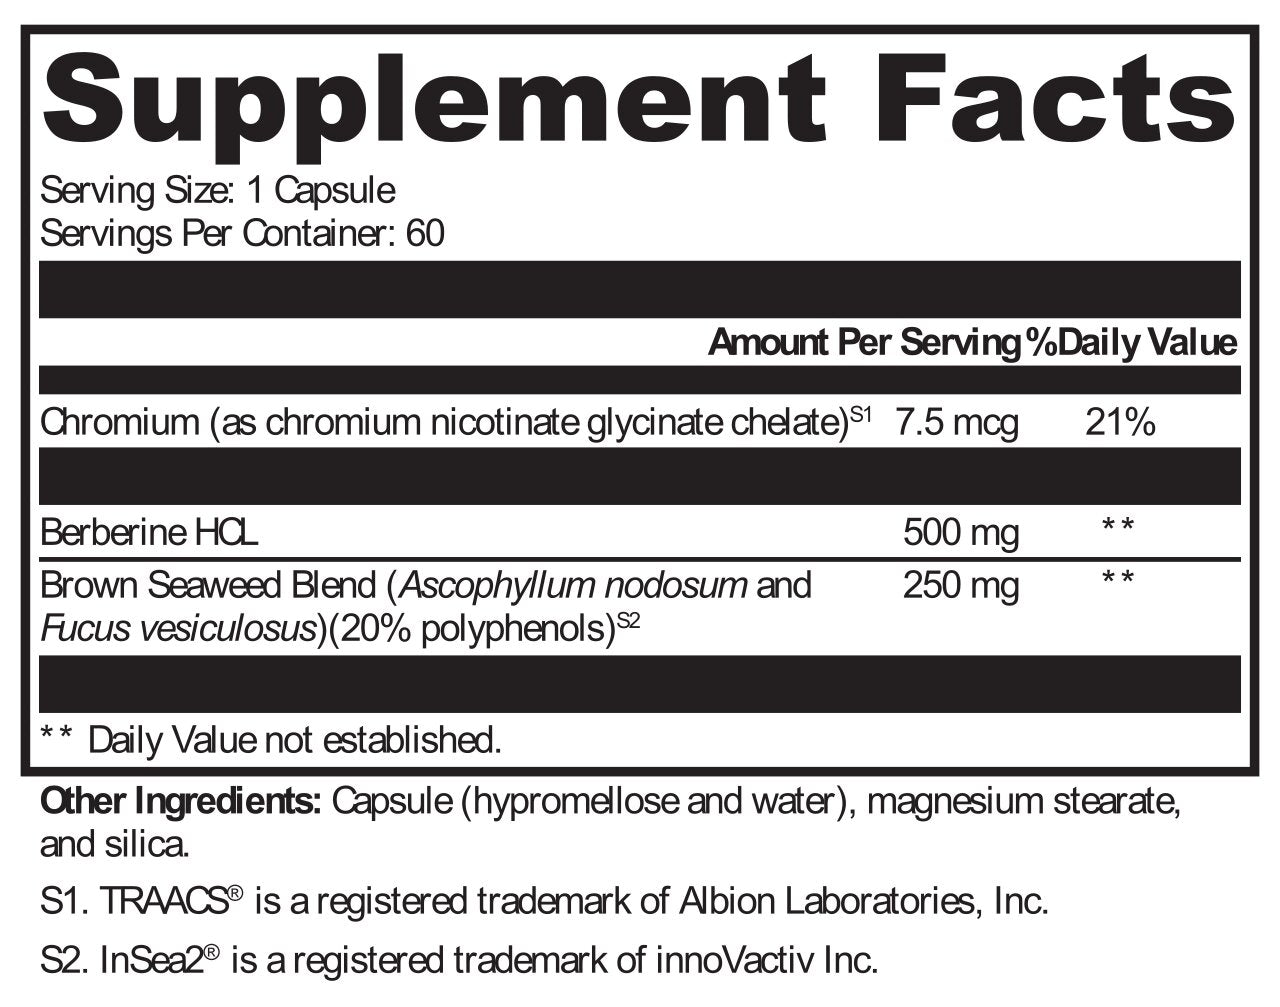 KC Pro-Nutrients, Carb X